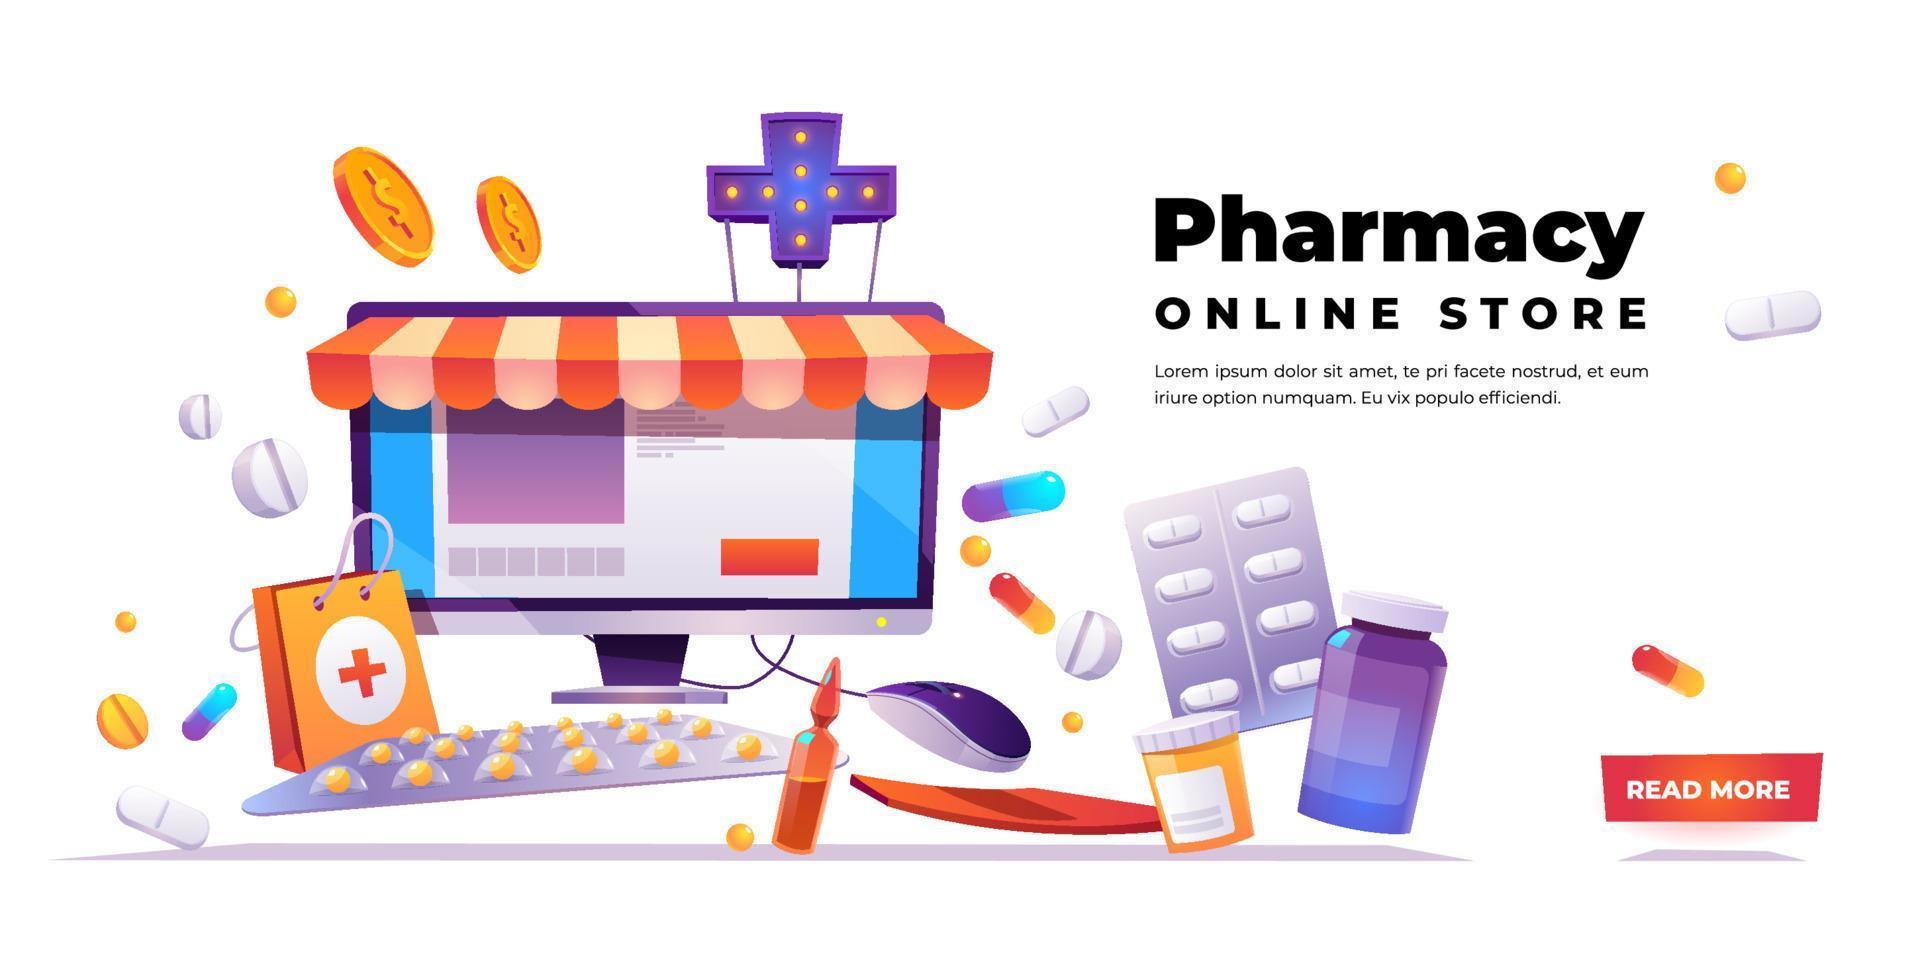 Pharmacy online store vector banner